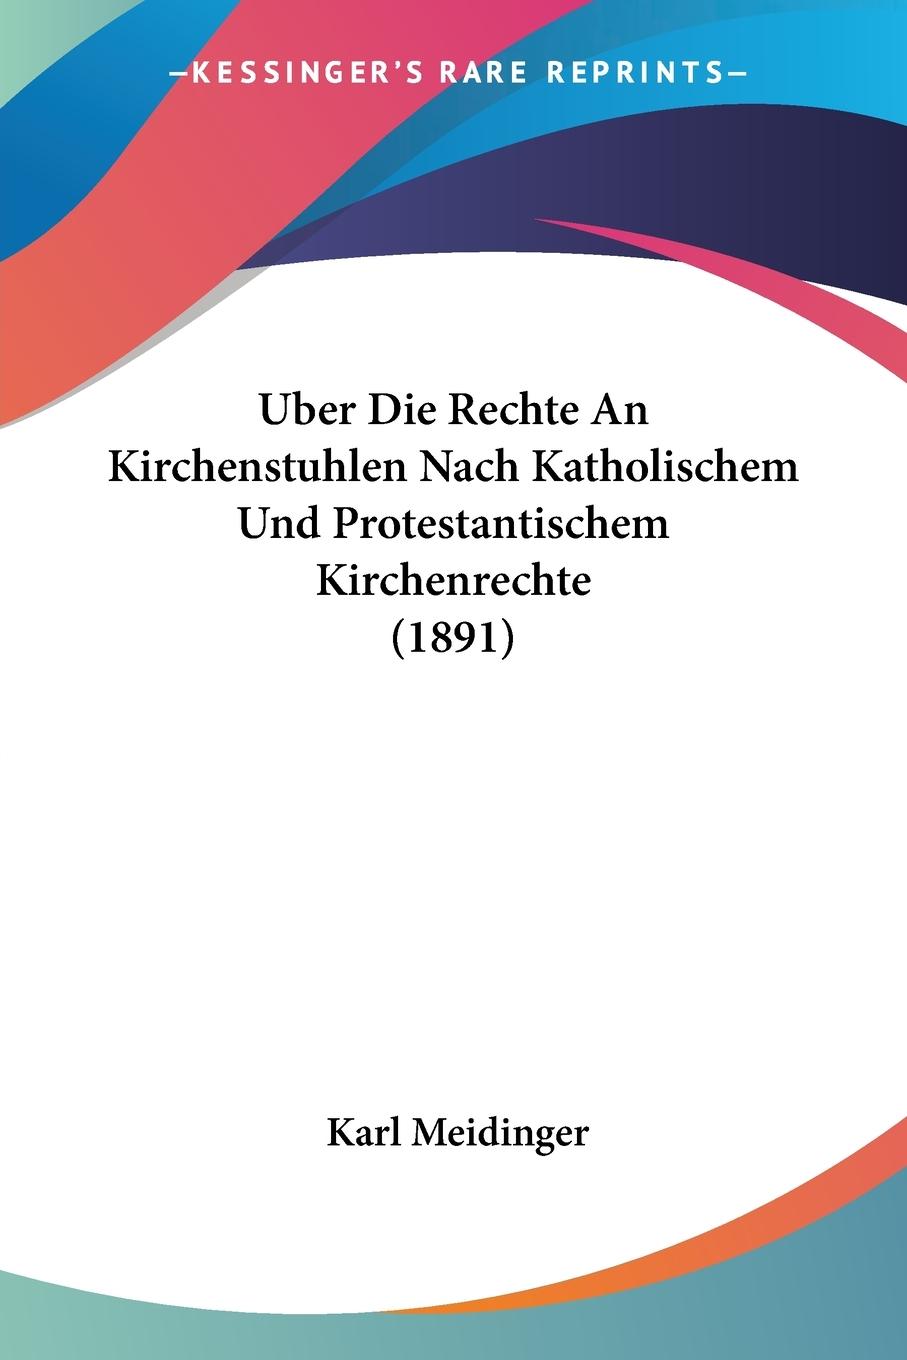 Uber Die Rechte An Kirchenstuhlen Nach Katholischem Und Protestantischem Kirchenrechte (1891) - Meidinger, Karl